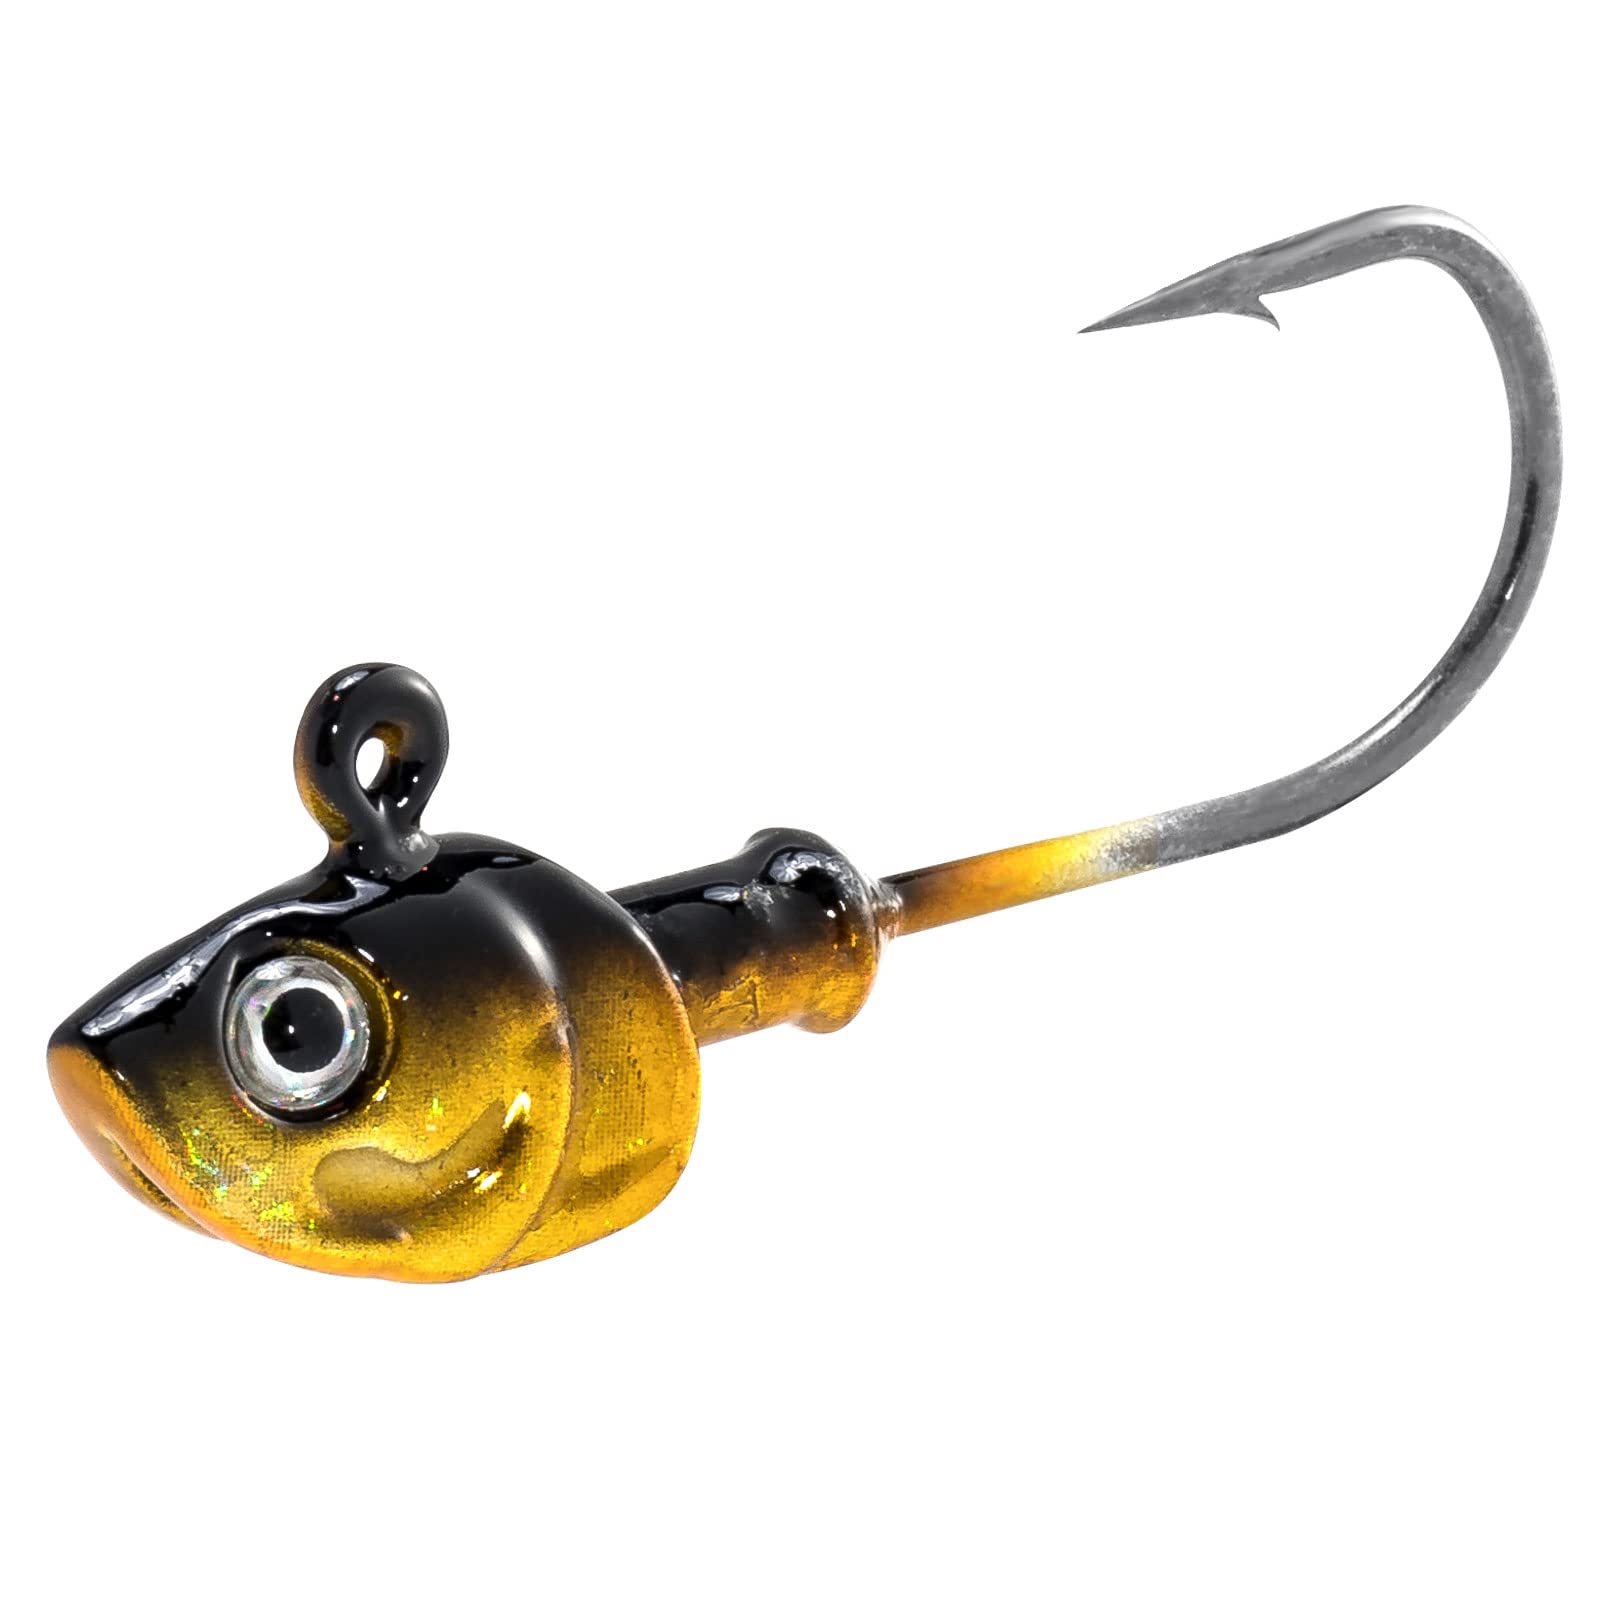 3D Eye Fishing Jig Heads Freshwater Fishing Jigs for Bass Walleye